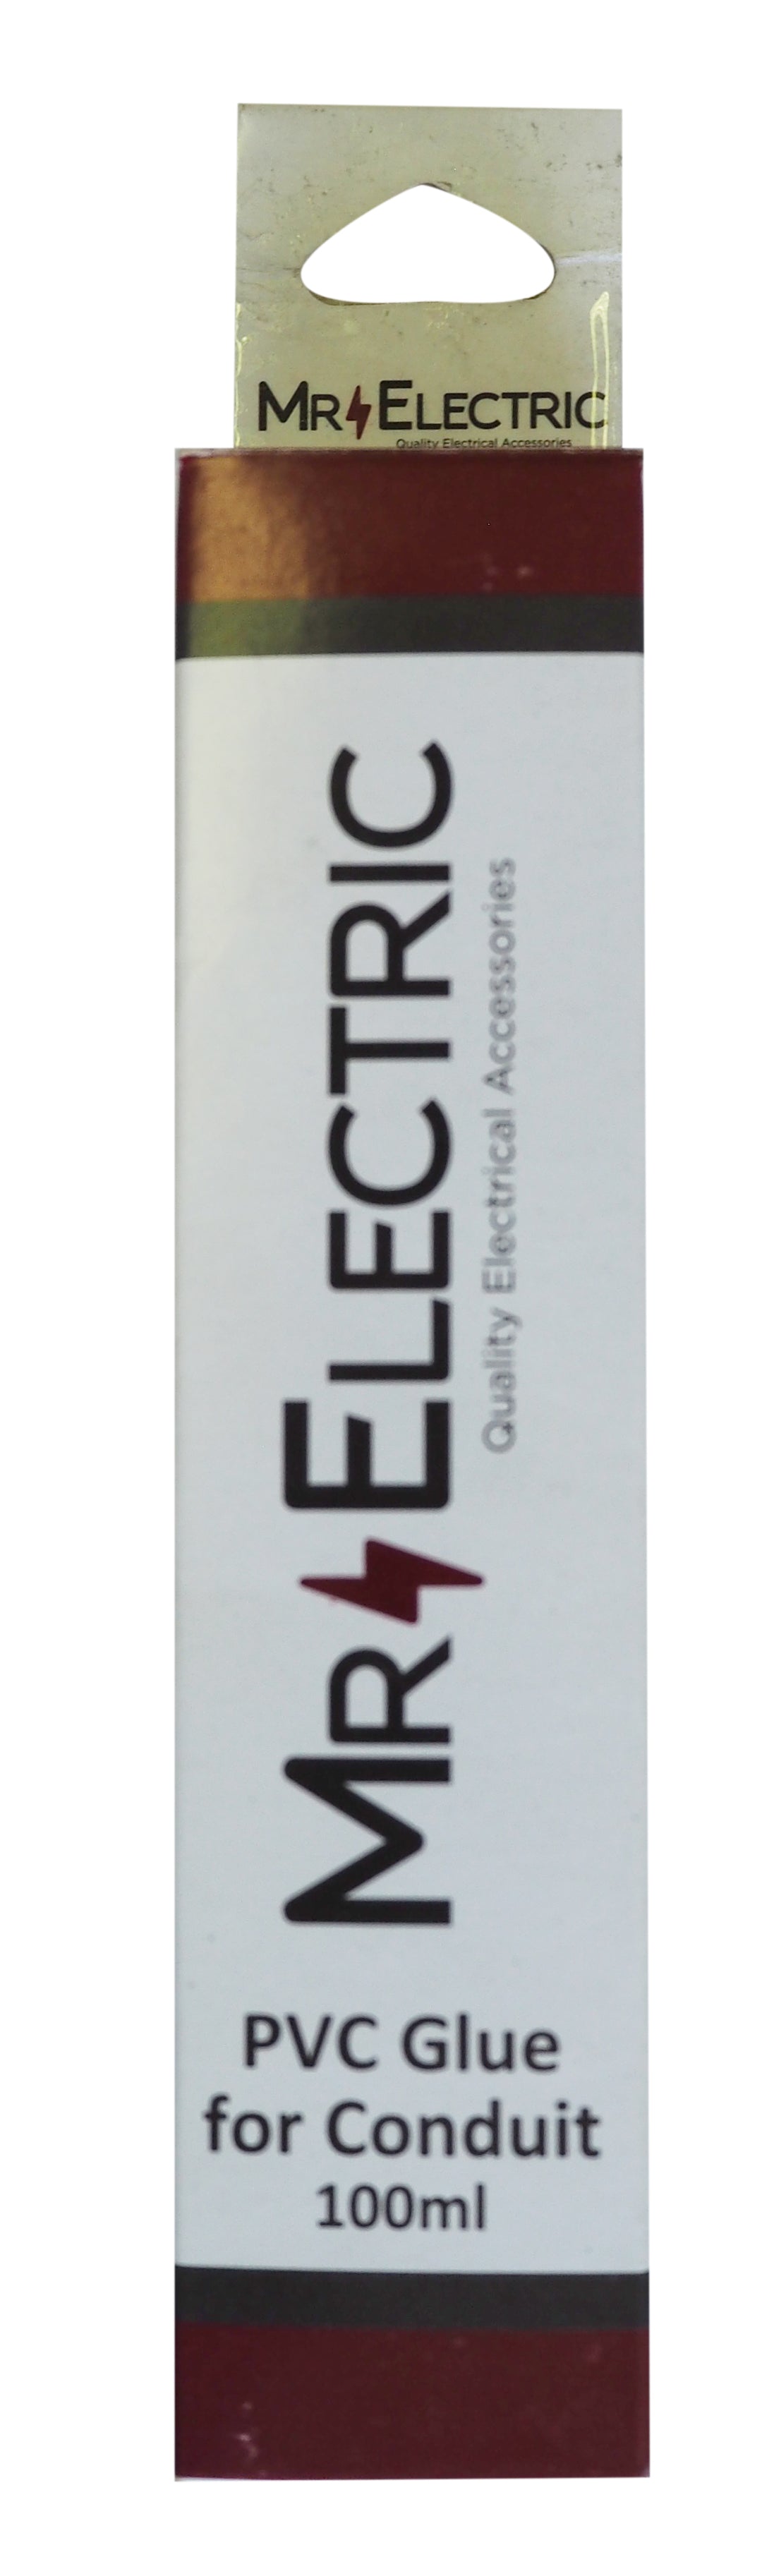 Mr Electric PVC Glue